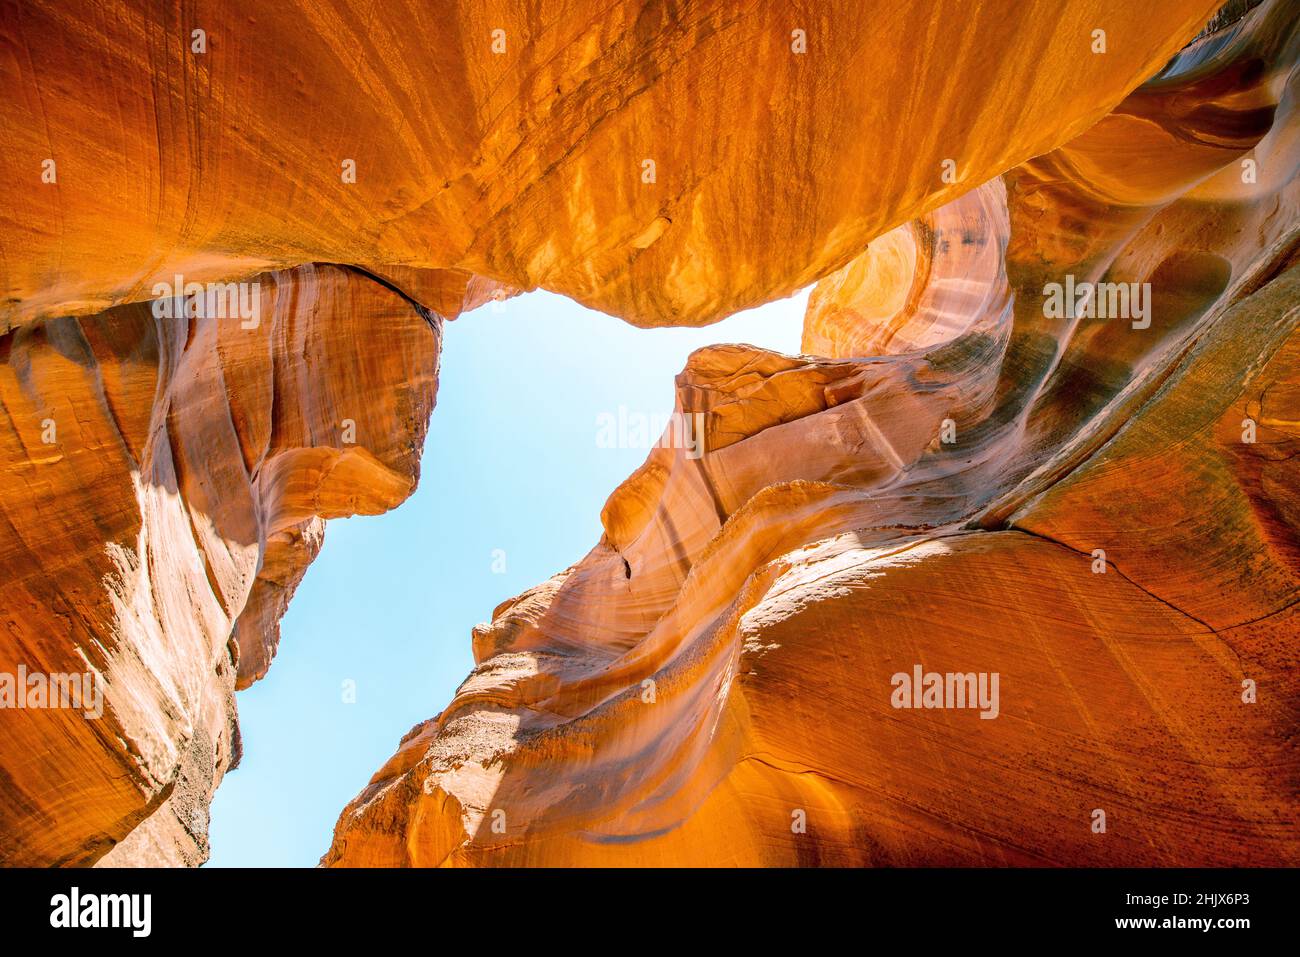 Antilope Canyon, Arizona - États-Unis. Vue extérieure sur les rochers sous un ciel bleu d'été Banque D'Images